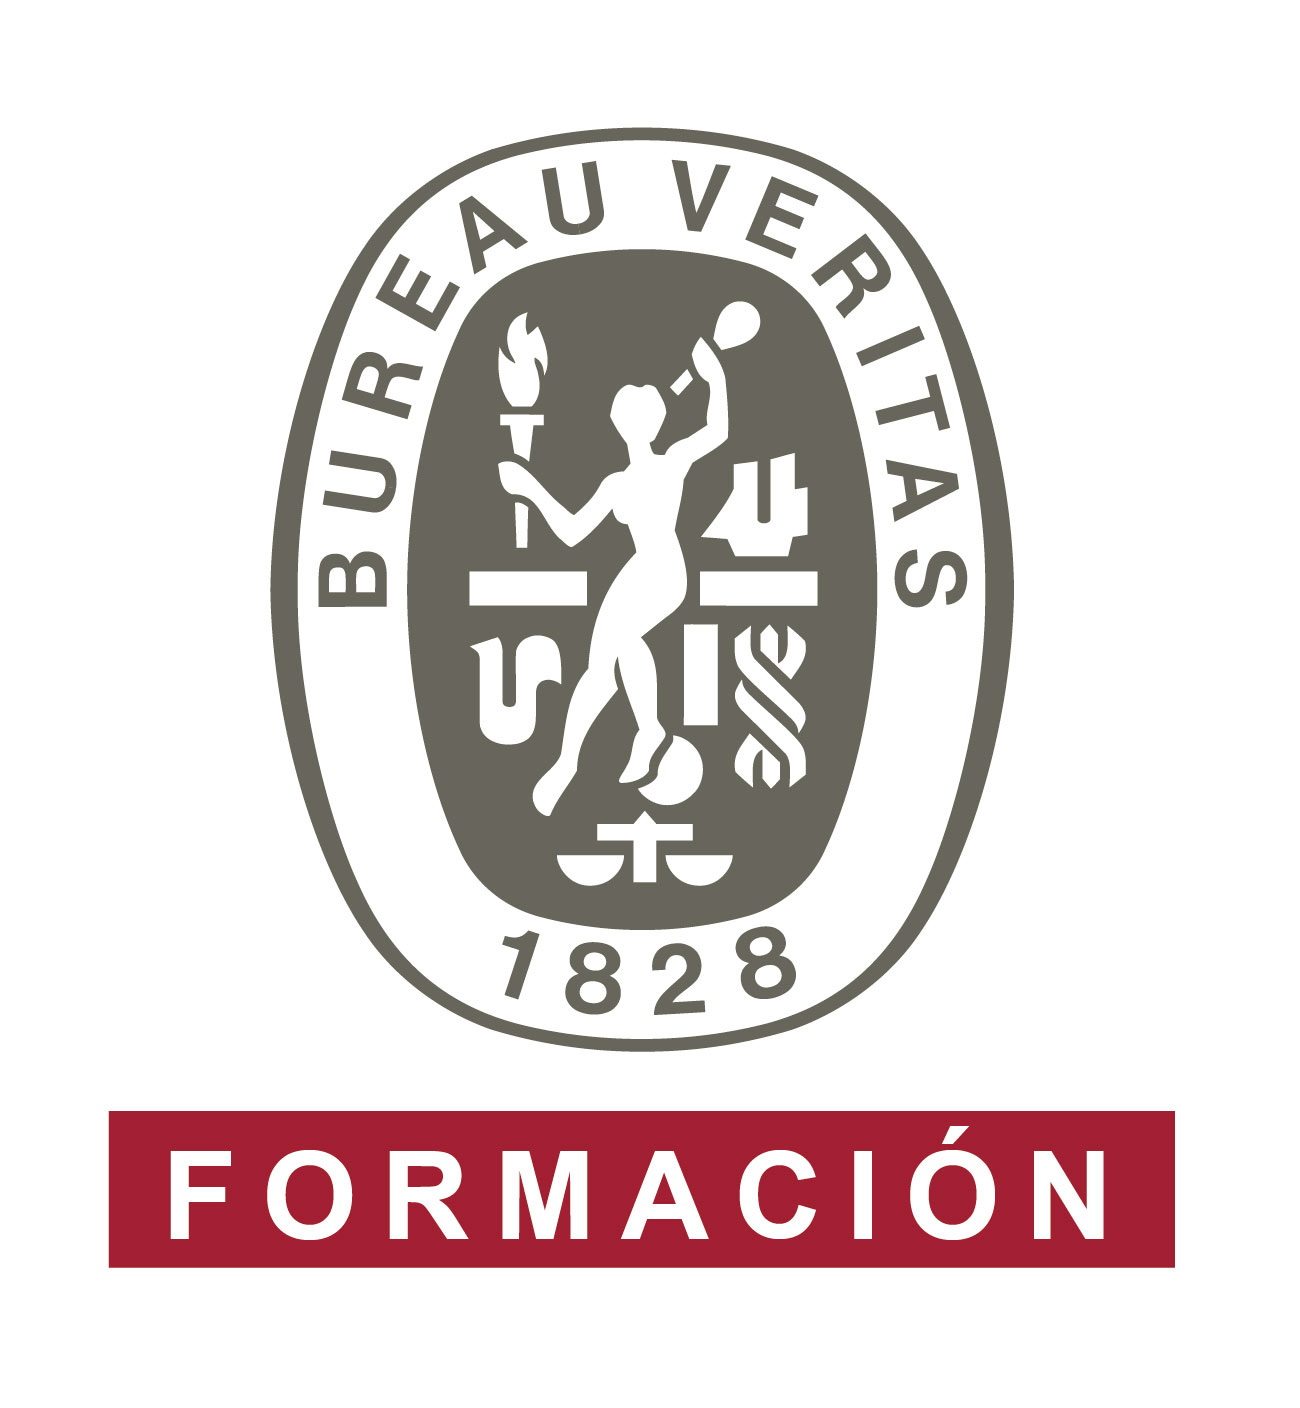 Bureau Veritas Formación (Centro Universitario y Business School)